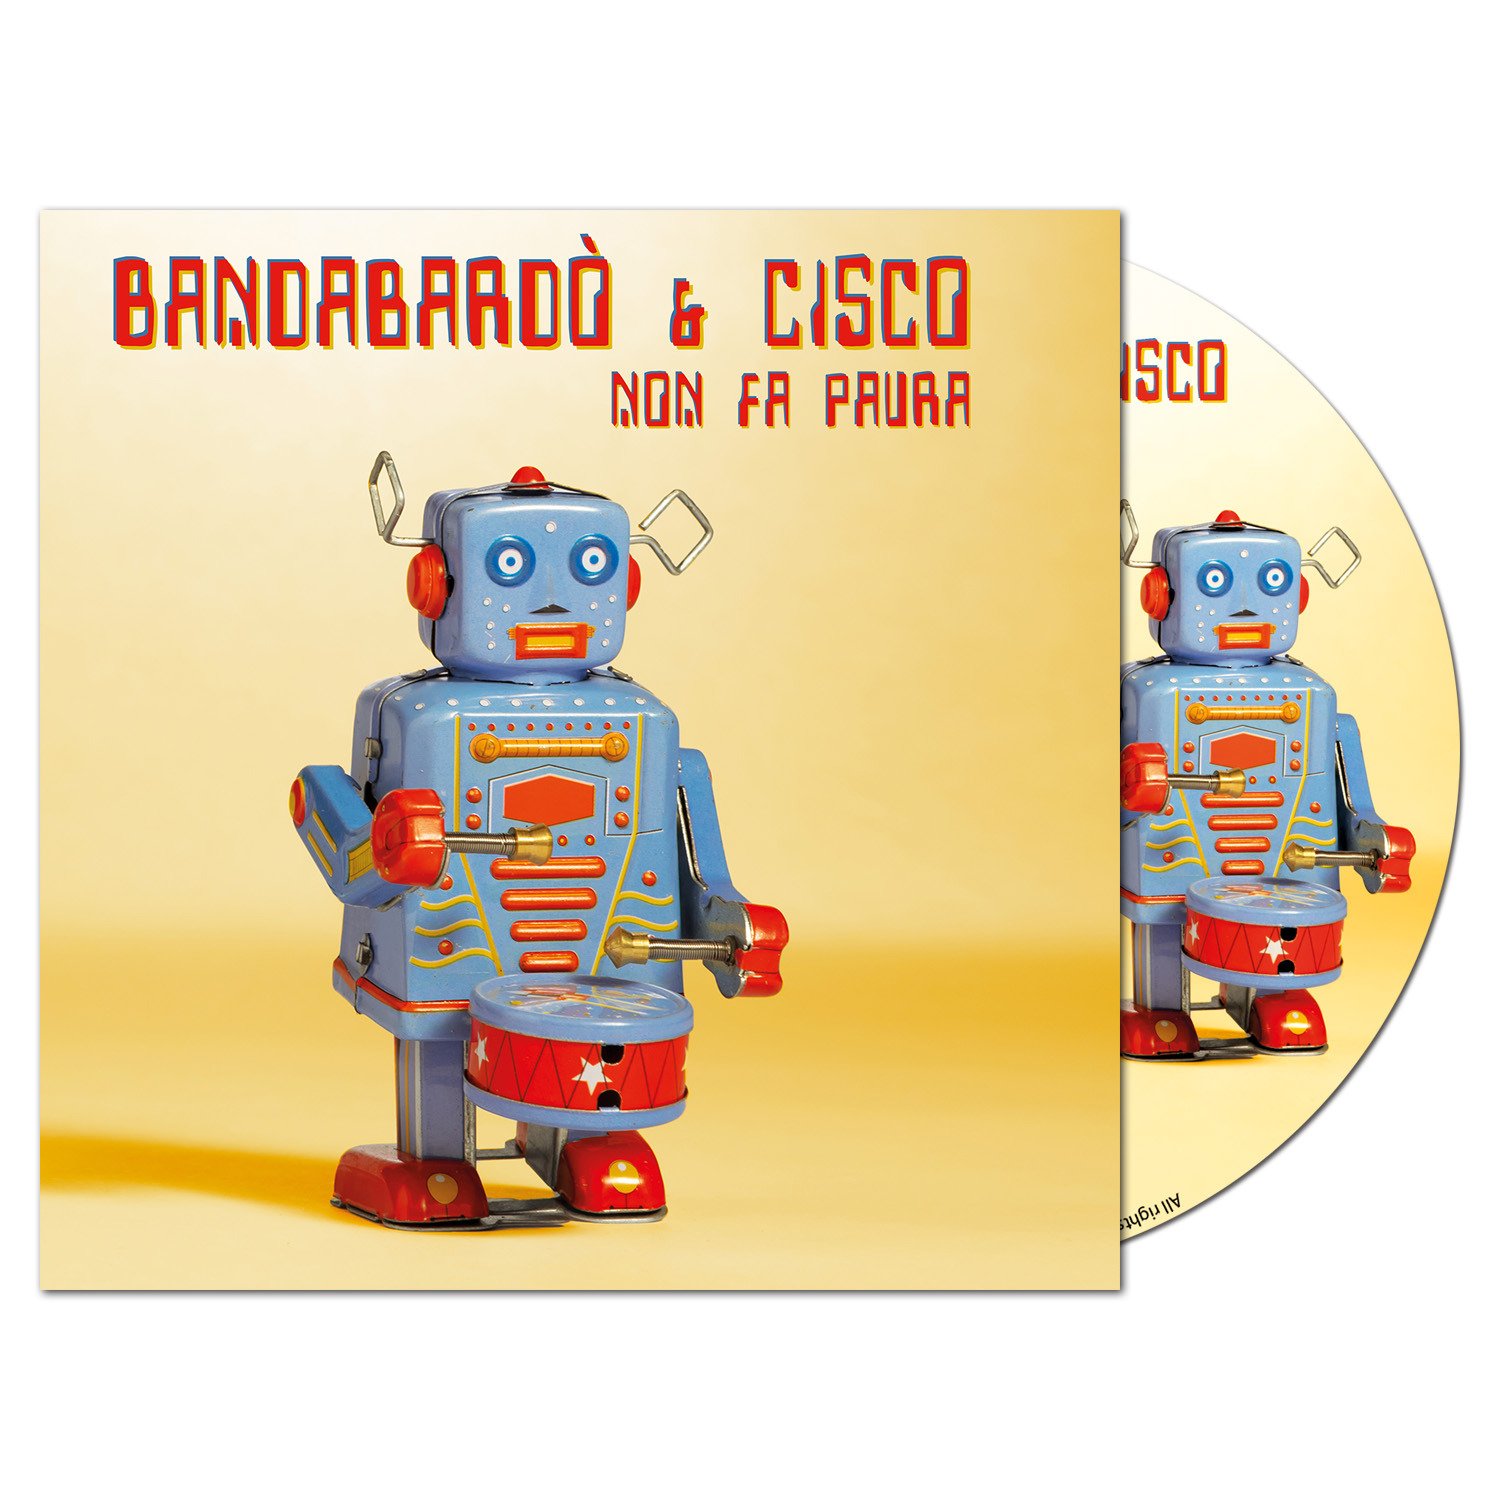 CD Shop - BANDABARDO & CISCO NON FA PAURA